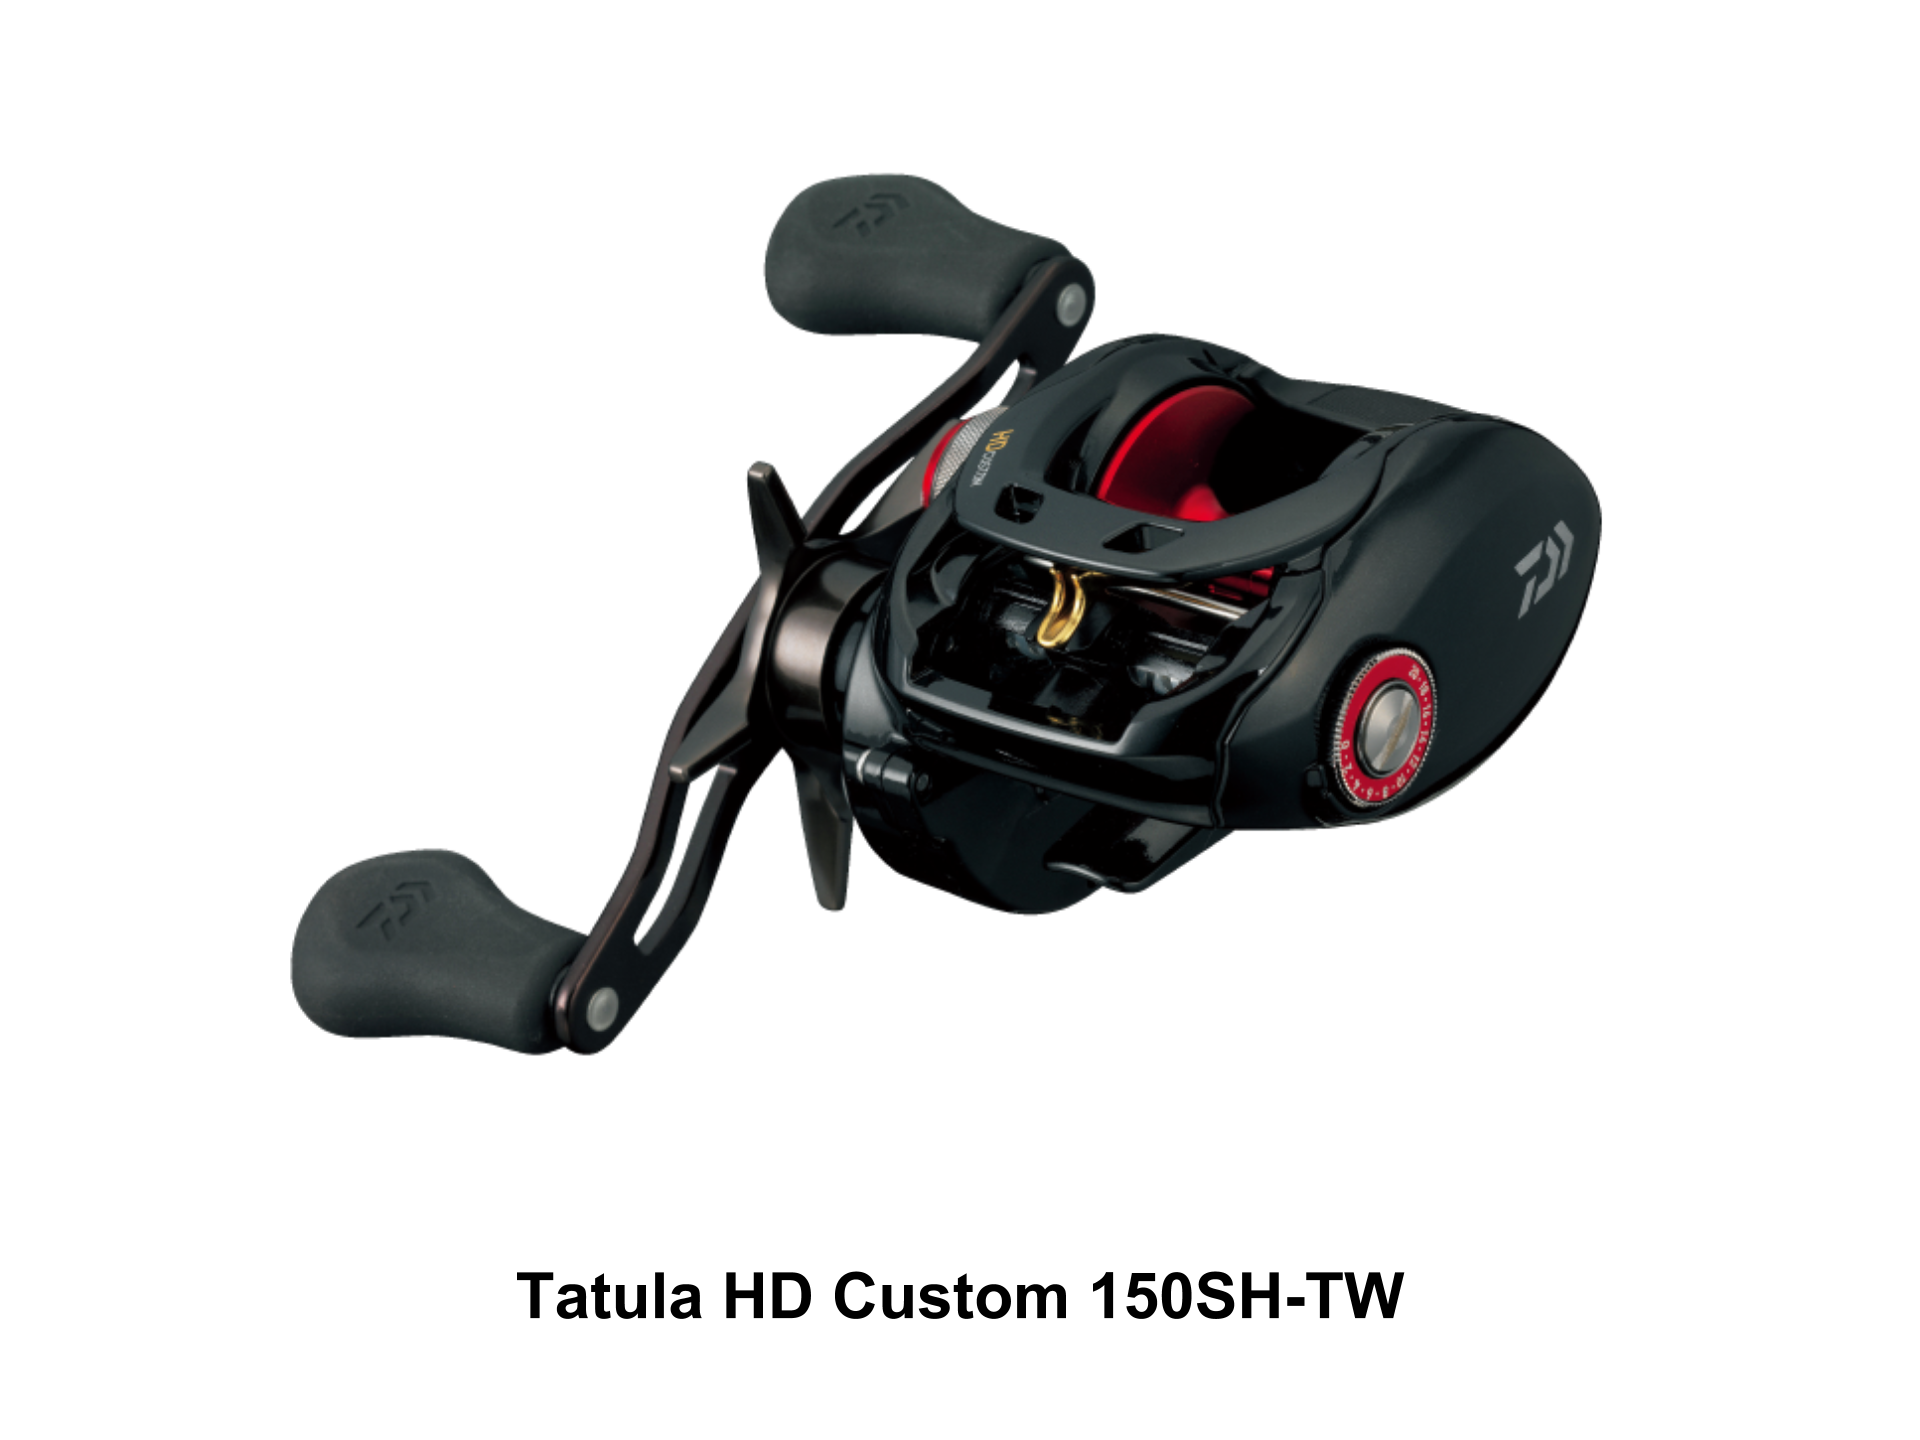 TATULA HD CUSTOM 150SH-TW